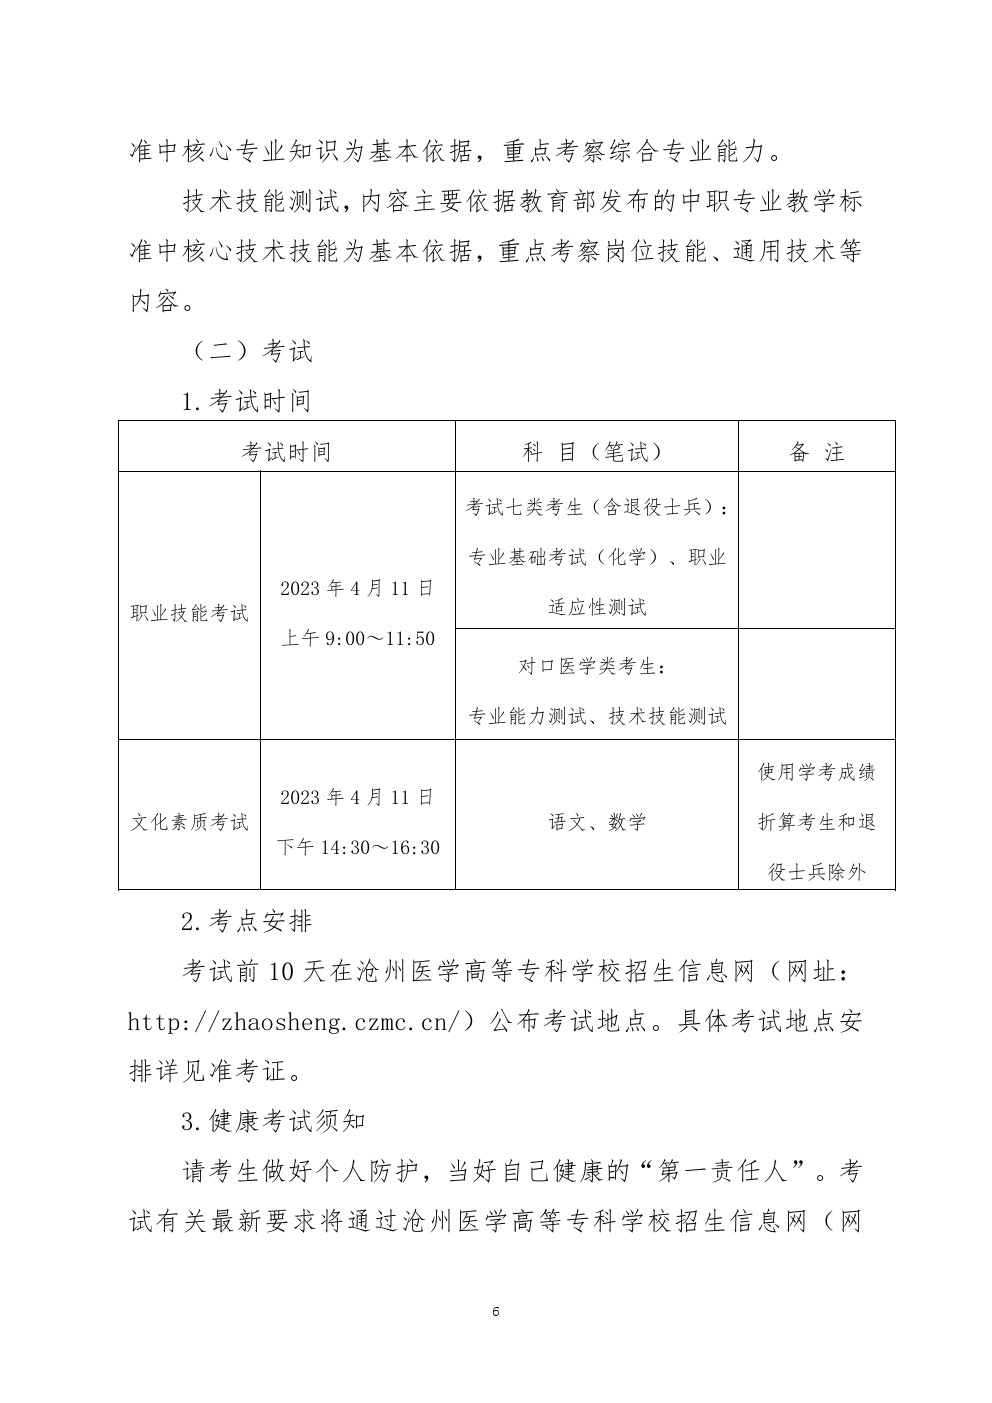 2023年河北省高职单招考试七类和对口医学类考试工作实施方案 